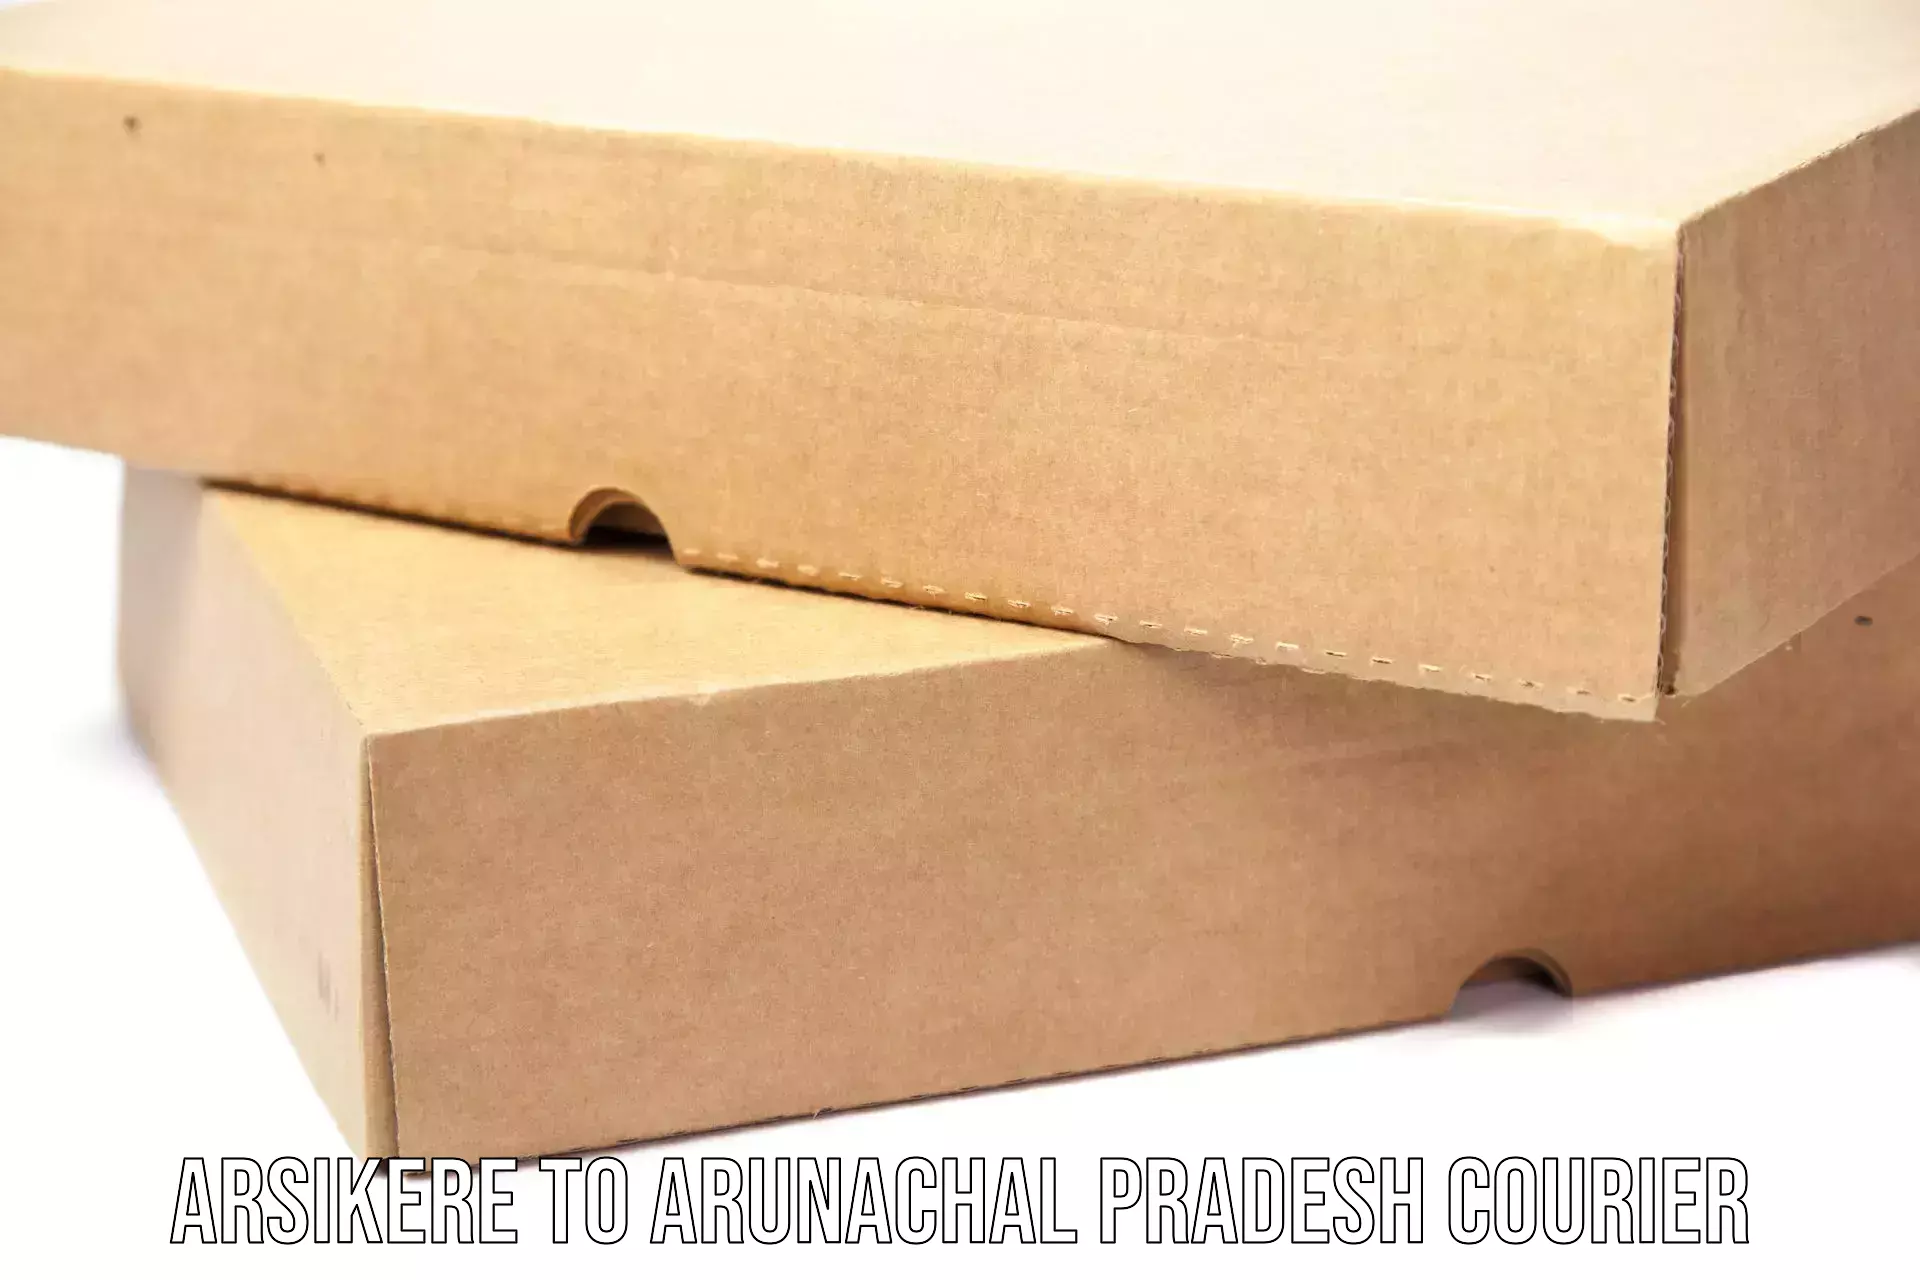 Cargo delivery service Arsikere to Arunachal Pradesh